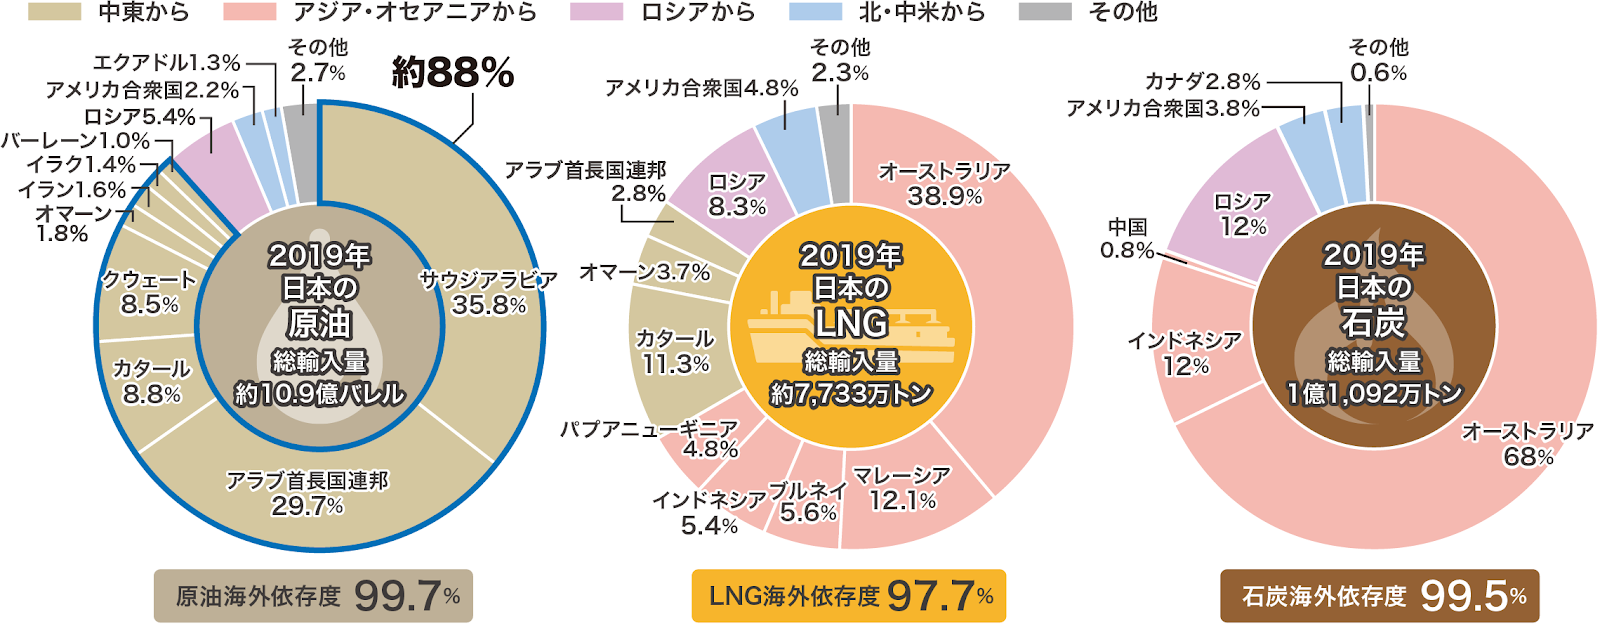 日本の化石燃料輸入先(2019年)